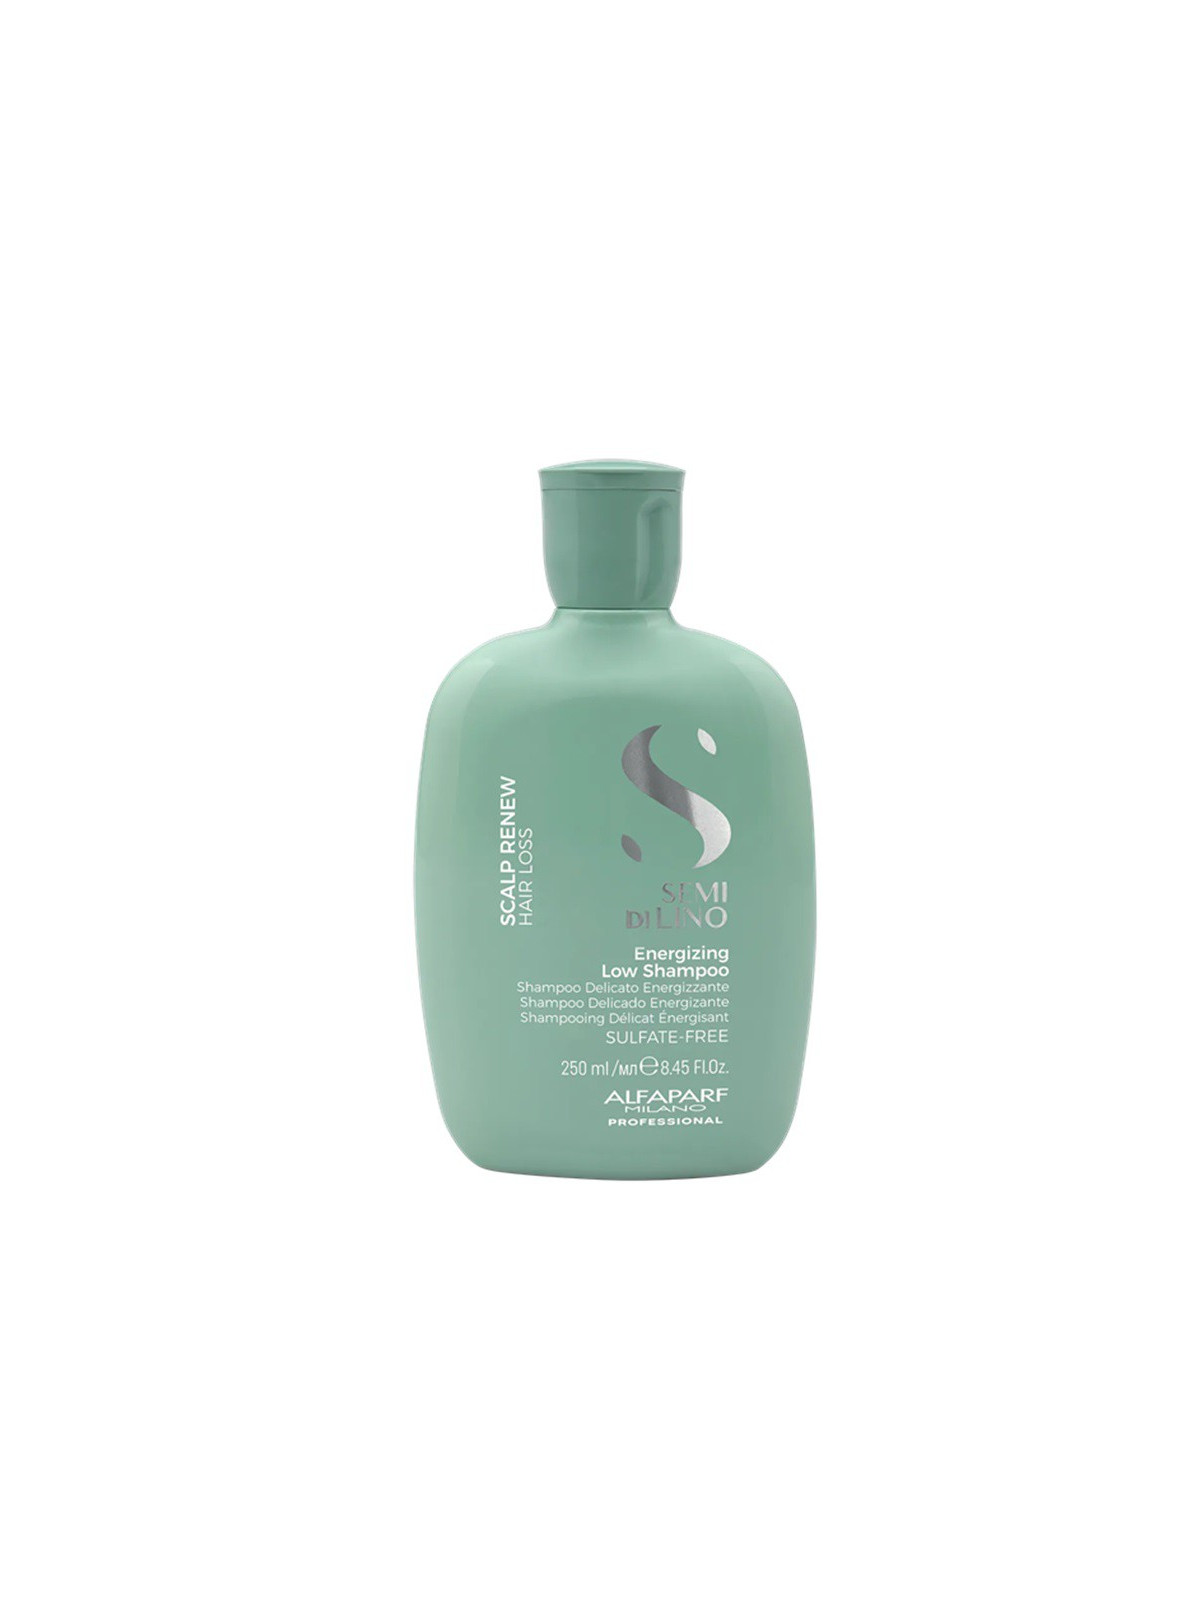 AlfaParf Milano Energizuojamasis šampūnas ploniems, retėjantiems ir lūžinėjantiems plaukams Scalp Care Energizing Low Shampoo